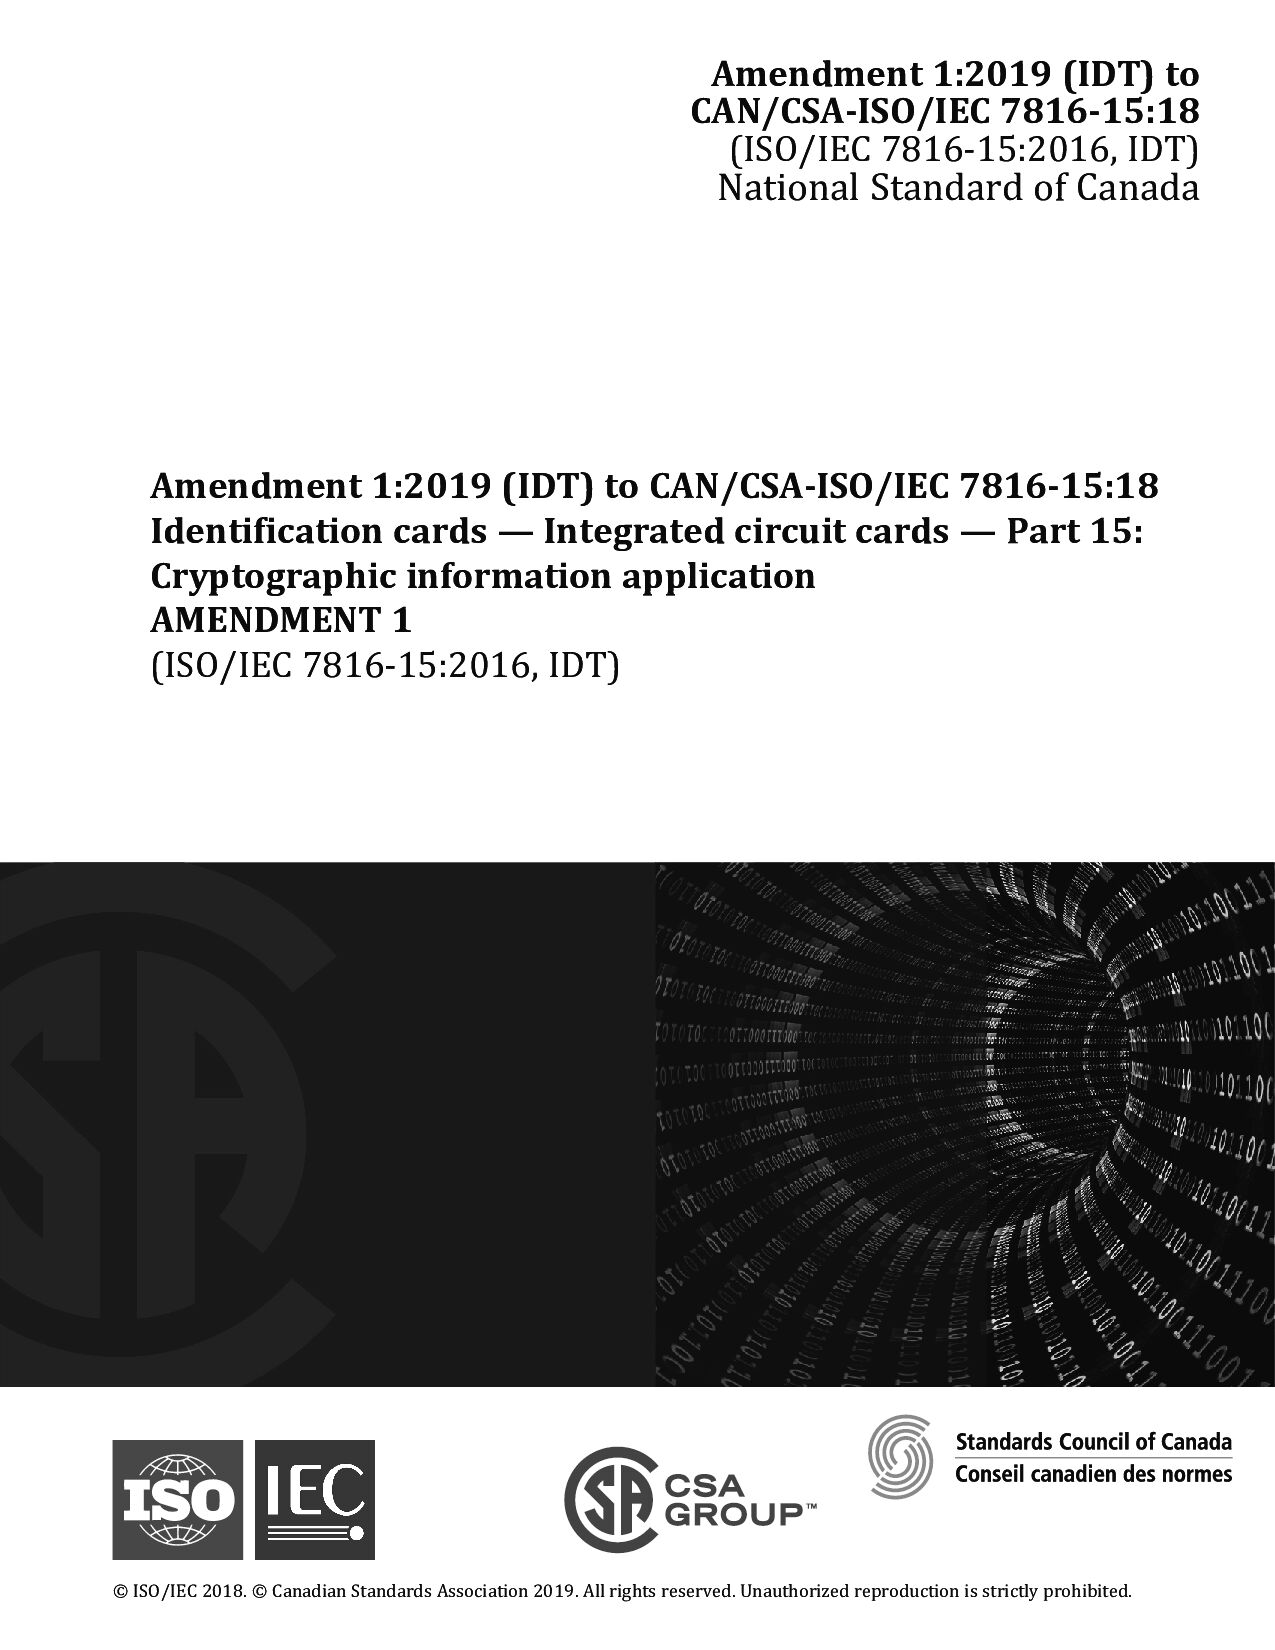 CAN/CSA-ISO/IEC 7816-15-18 AMD 1:2019封面图